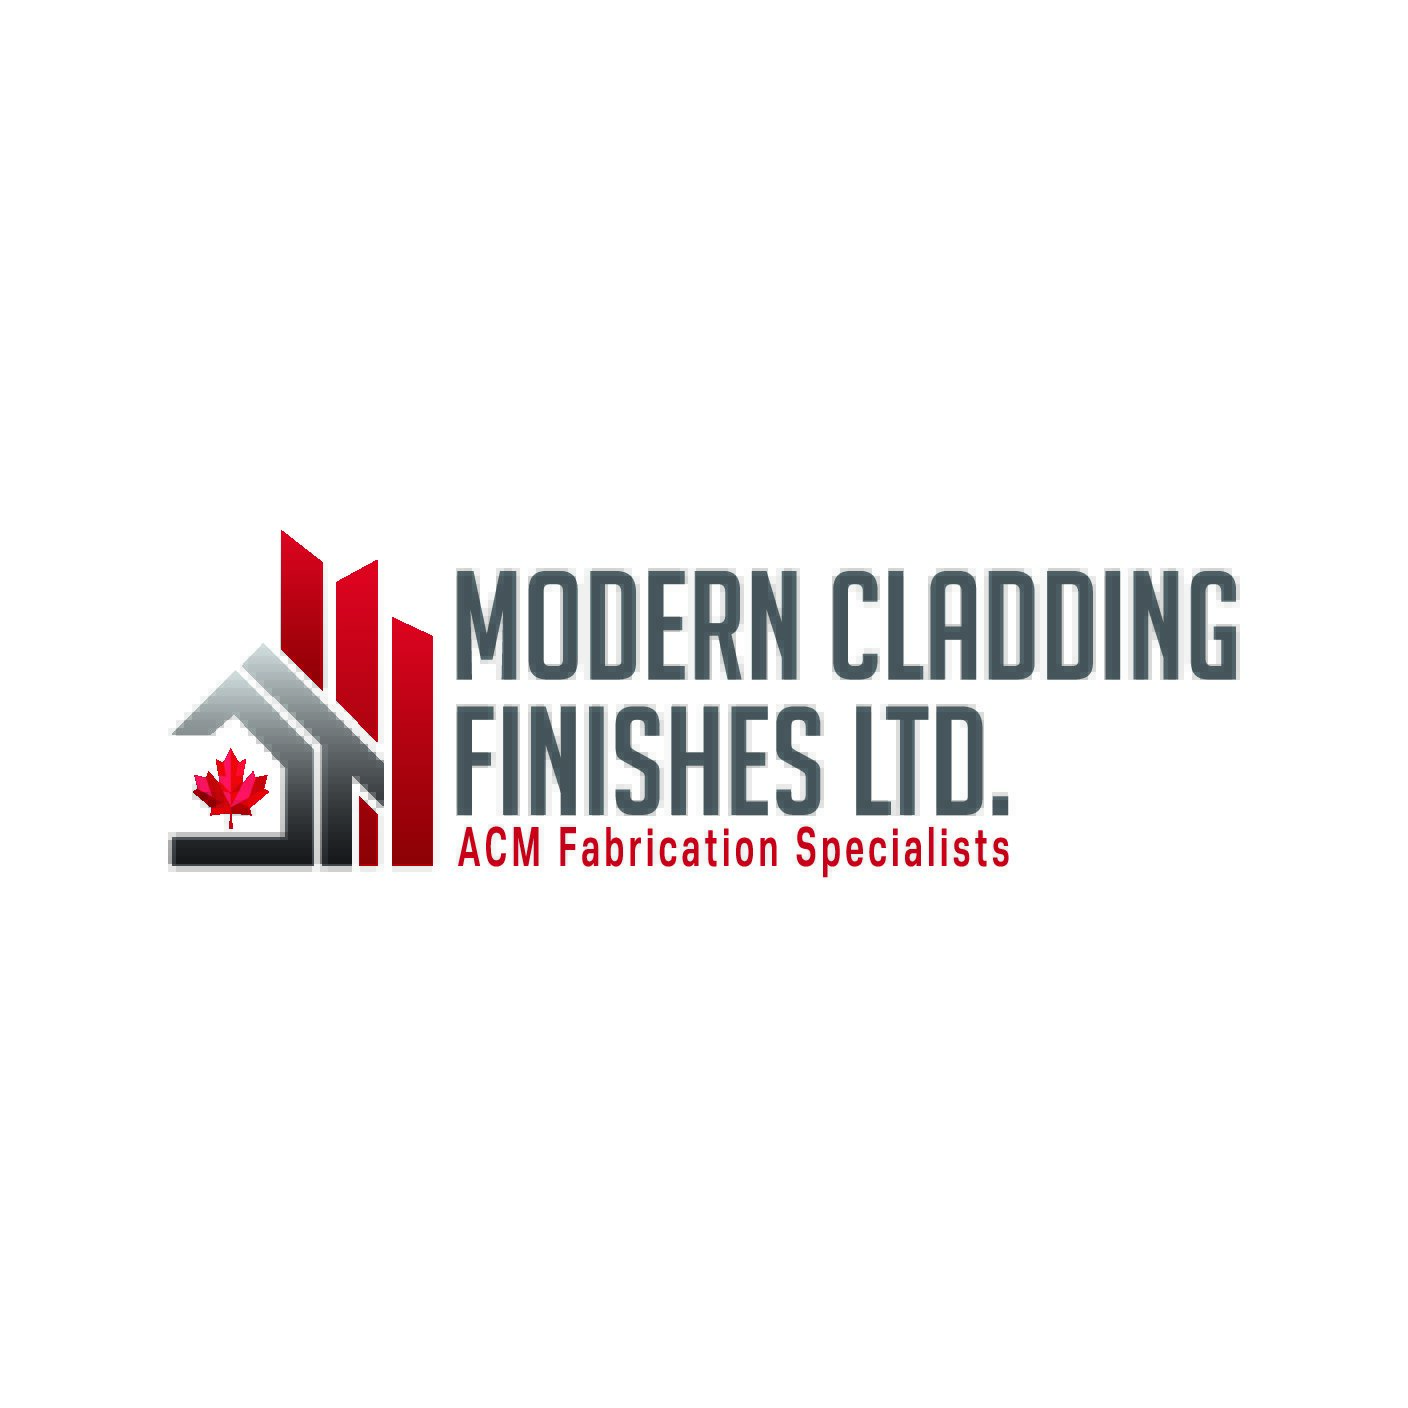 Image of Modern Cladding Finishes Ltd.